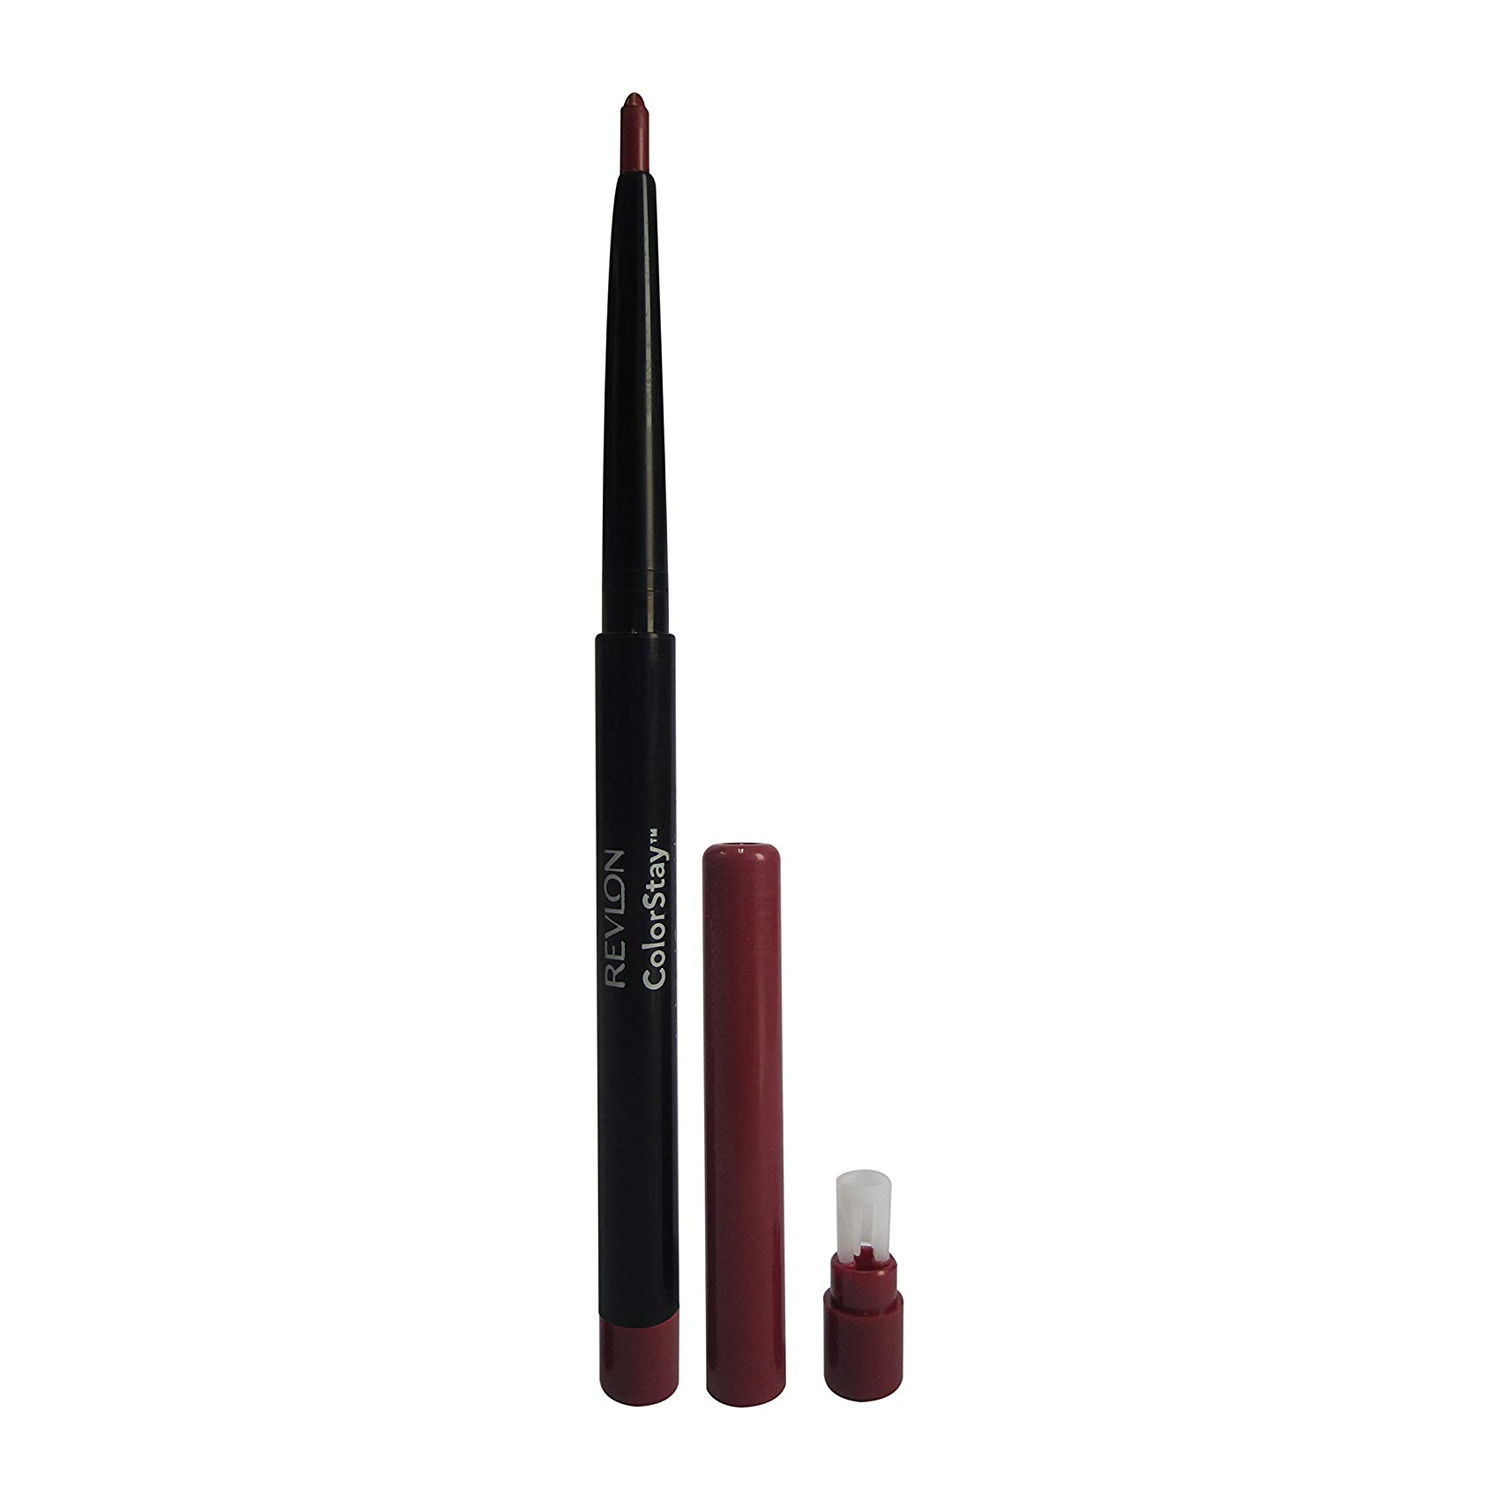 Buy Revlon Colorstay Lip Liner Pencil - Plum (0.28 g) - Purplle